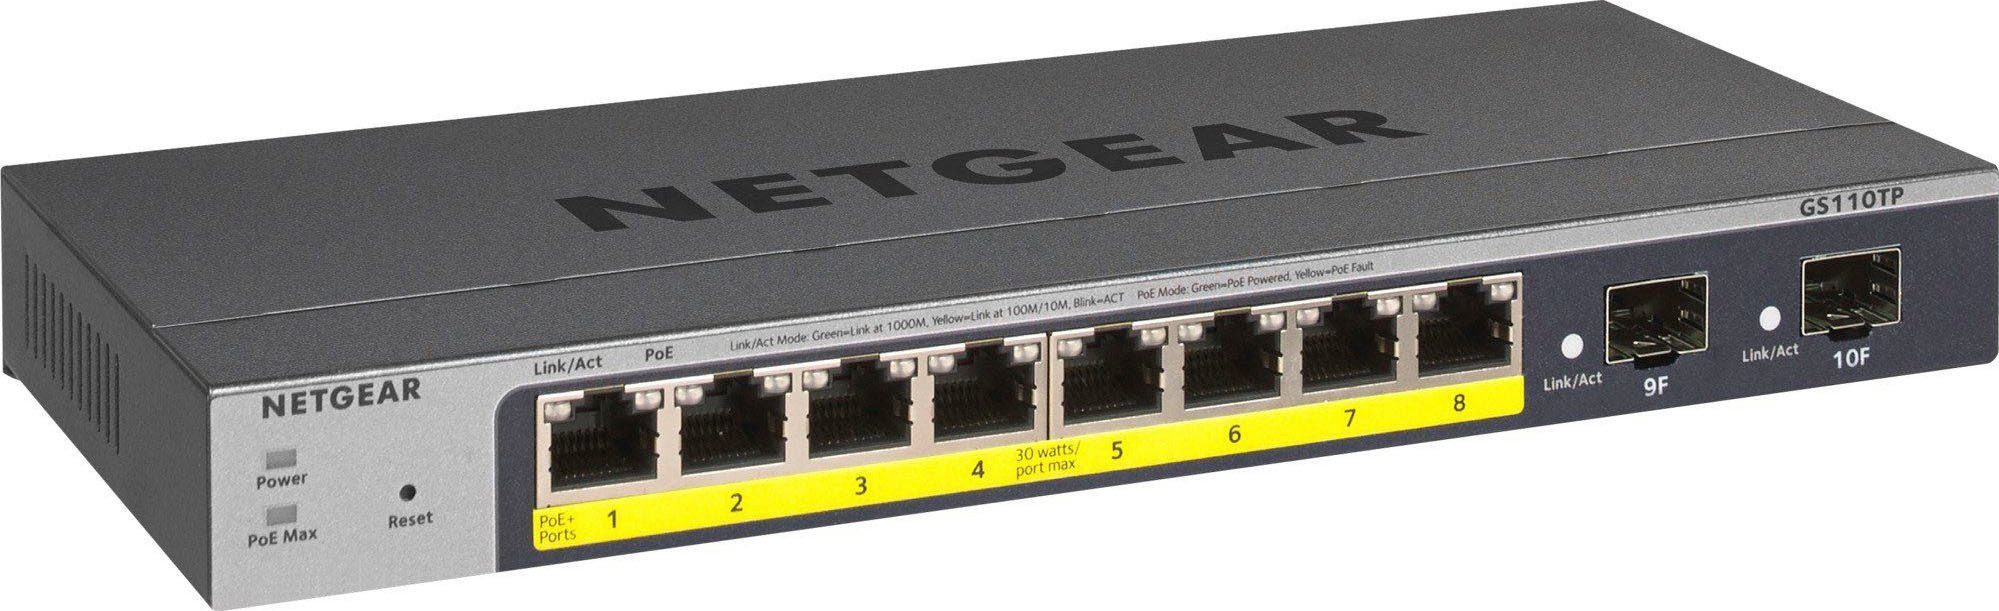 NETGEAR Nighthawk WLAN-Router XR1000